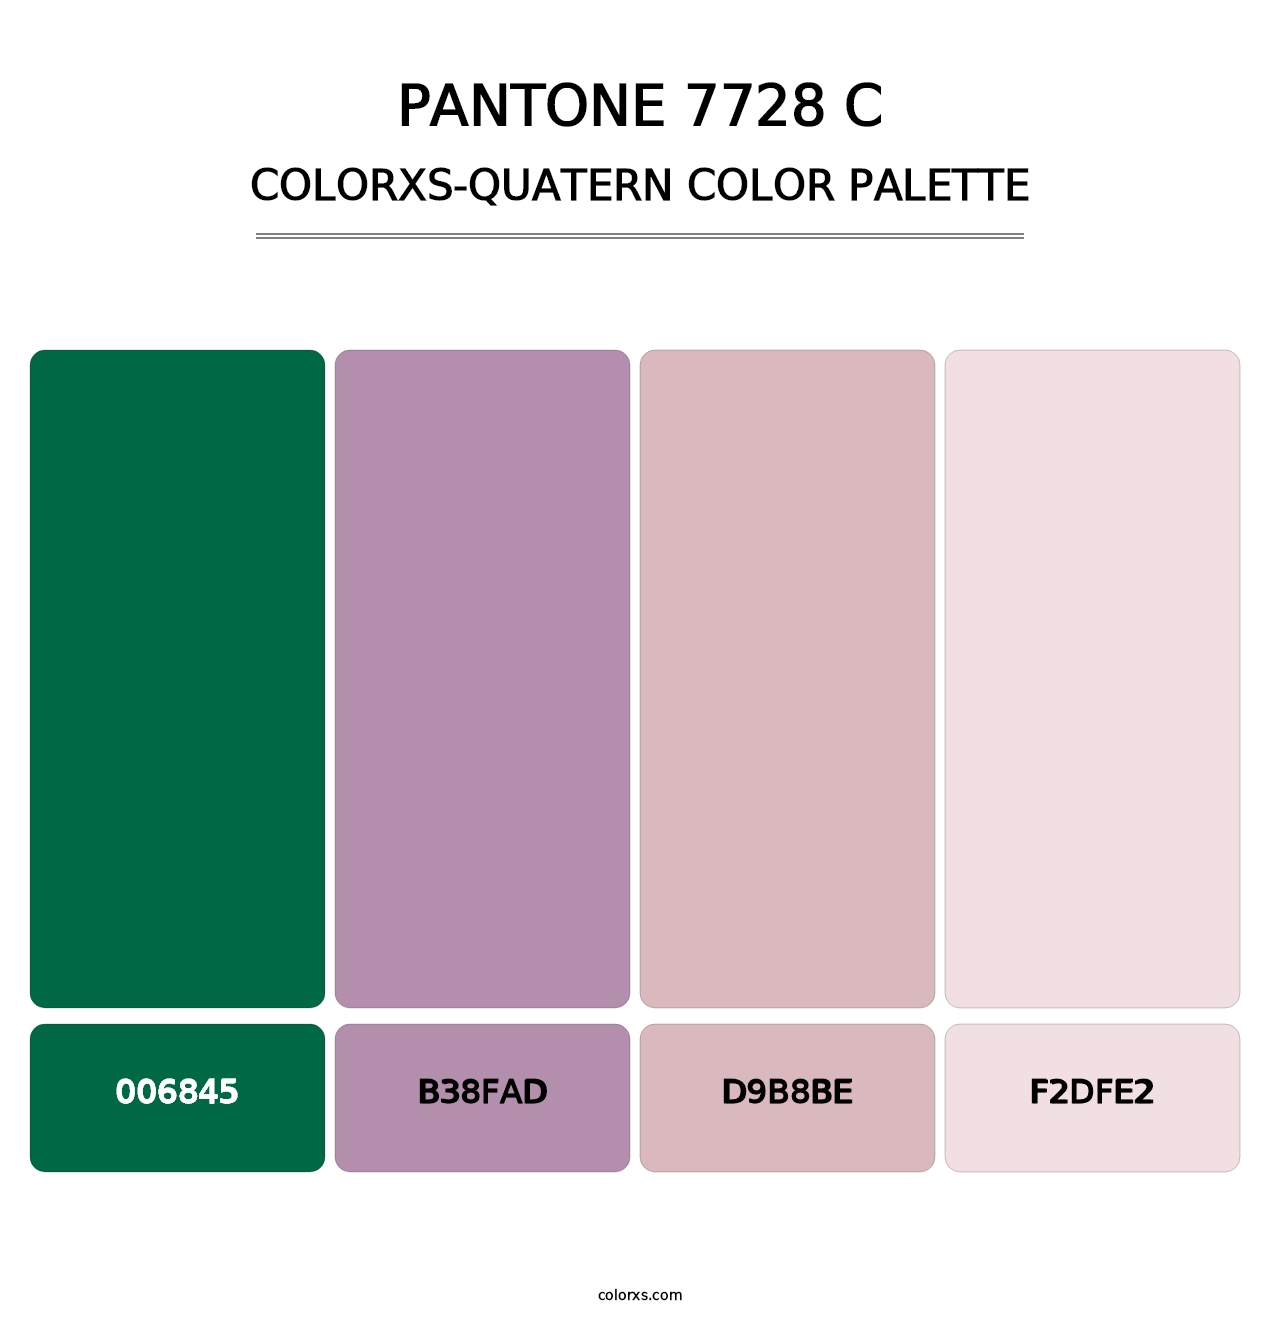 PANTONE 7728 C - Colorxs Quatern Palette